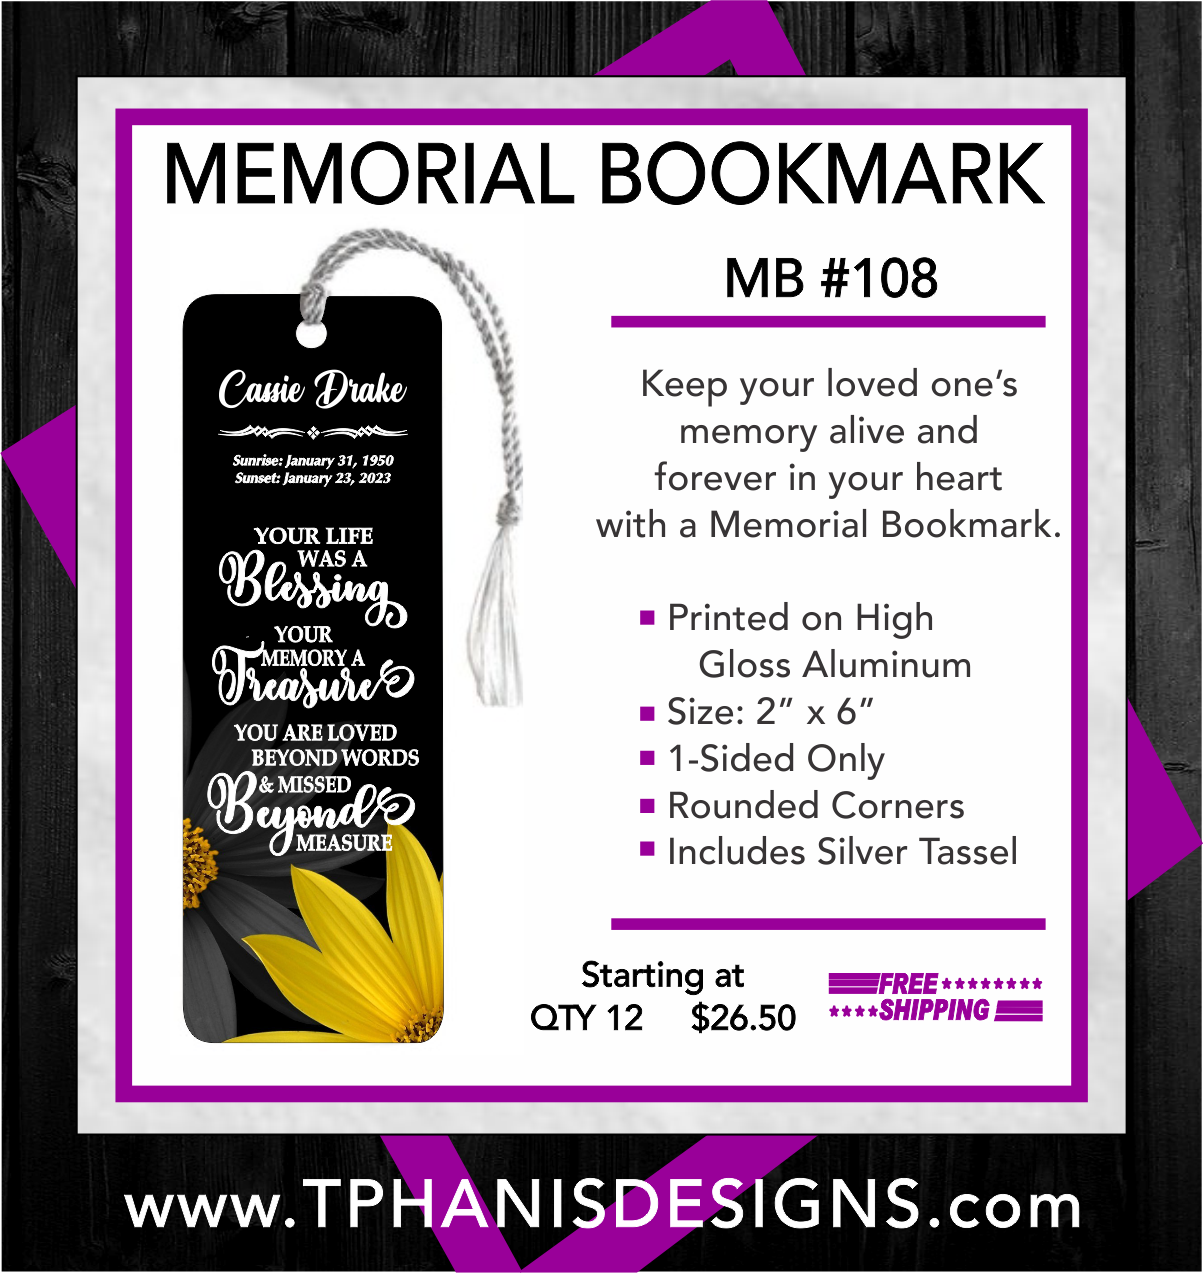 MEMORIAL BOOKMARK - MB108